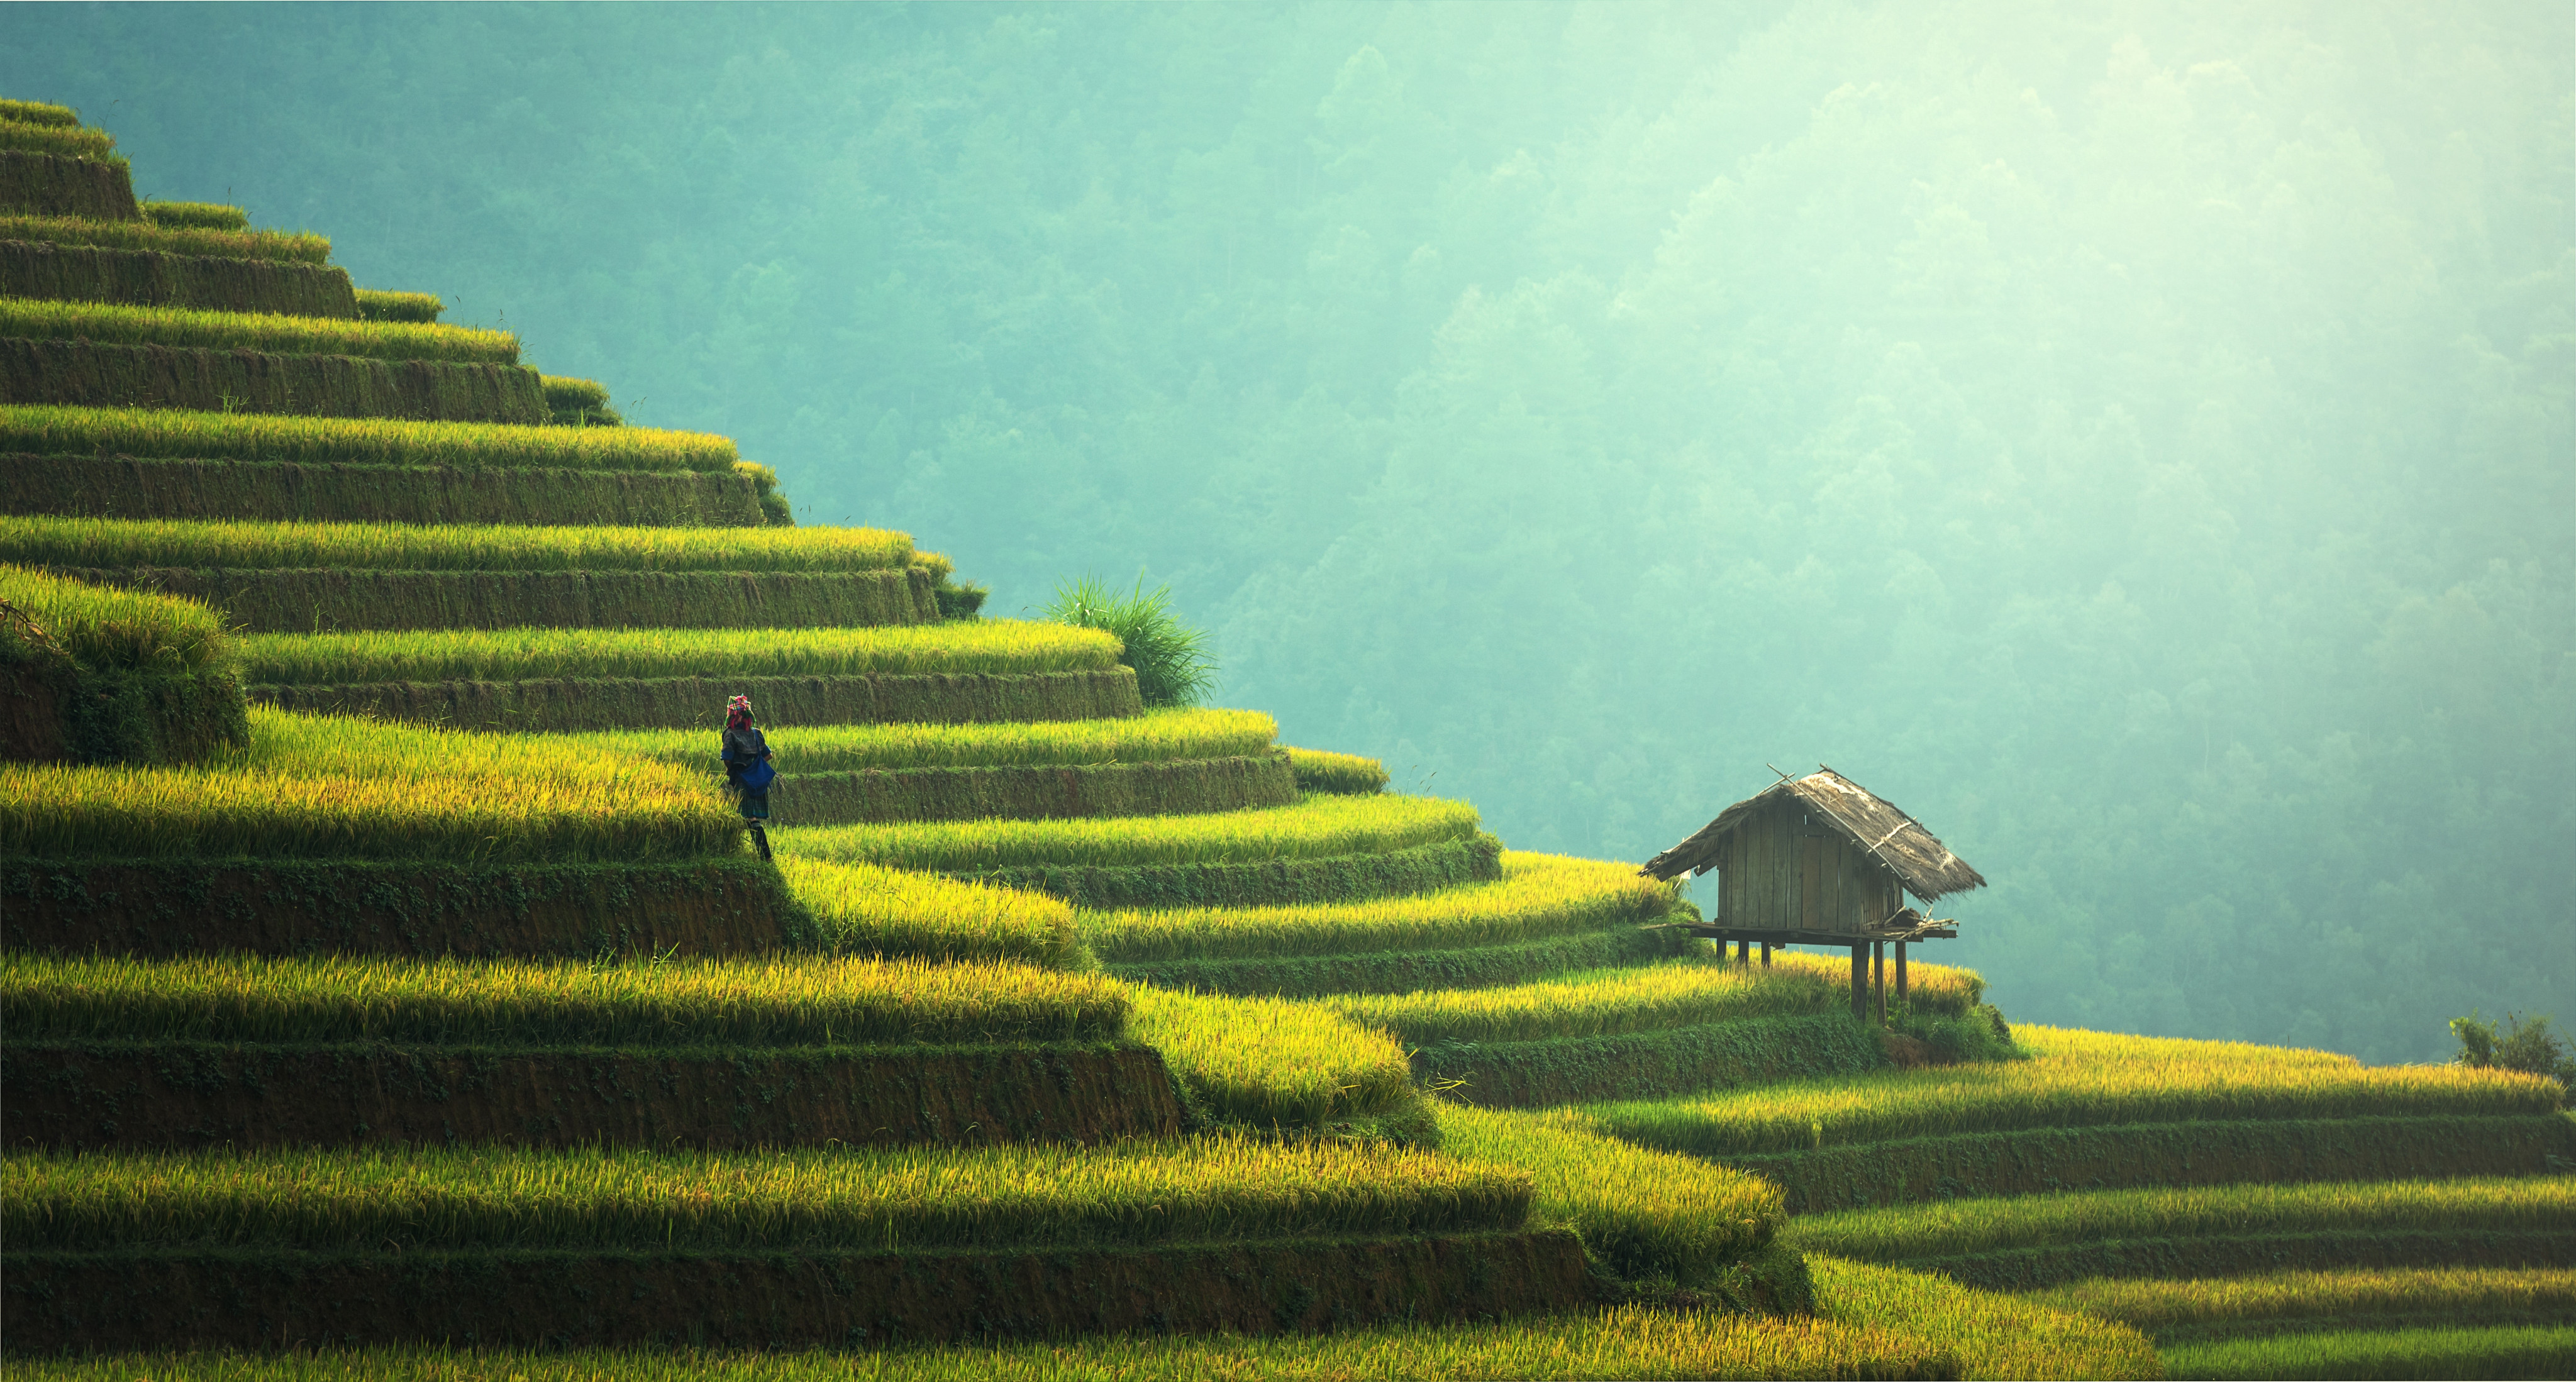 Worker in green rice fields